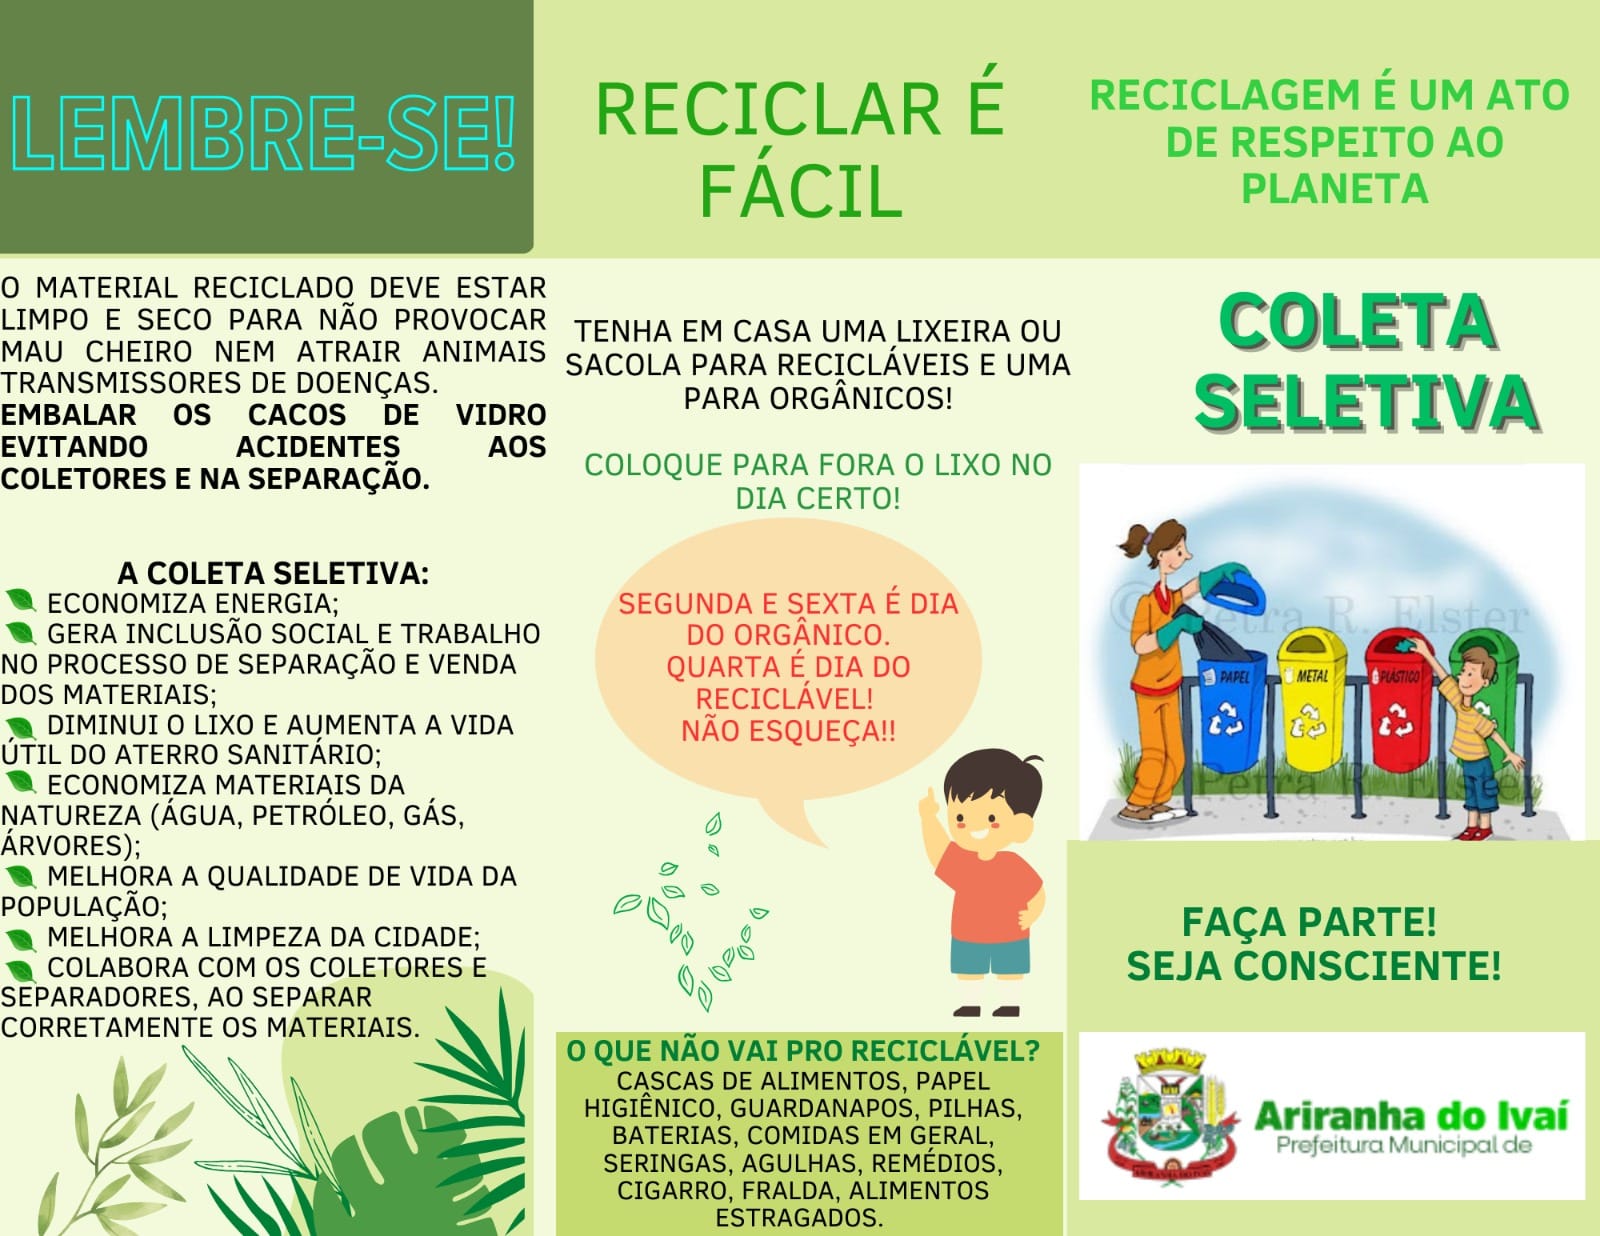 Secretaria de Agricultura e Desenvolvimento Promove Material de Conscientização sobre Reciclagem